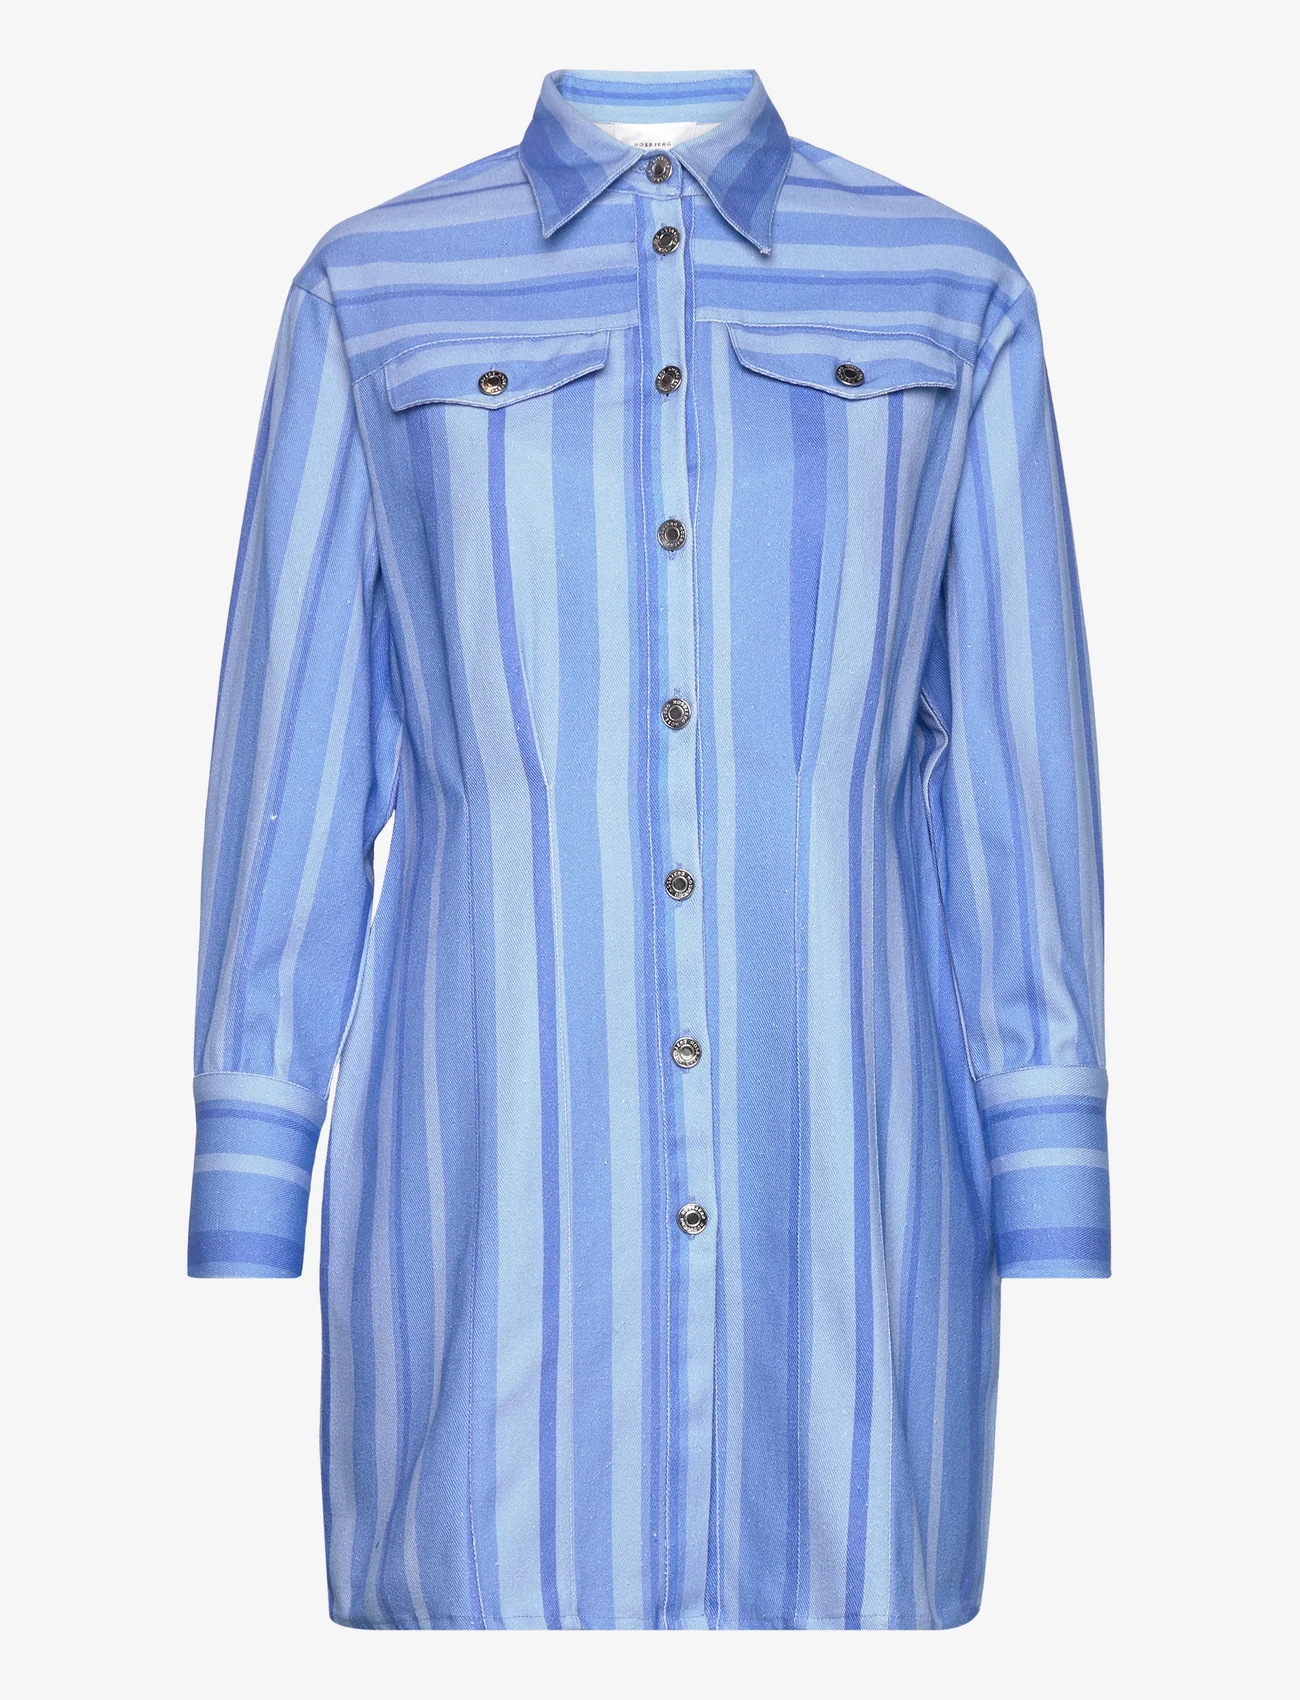 Hosbjerg - Juki Volume Dress - skjortekjoler - blue stripe - 0